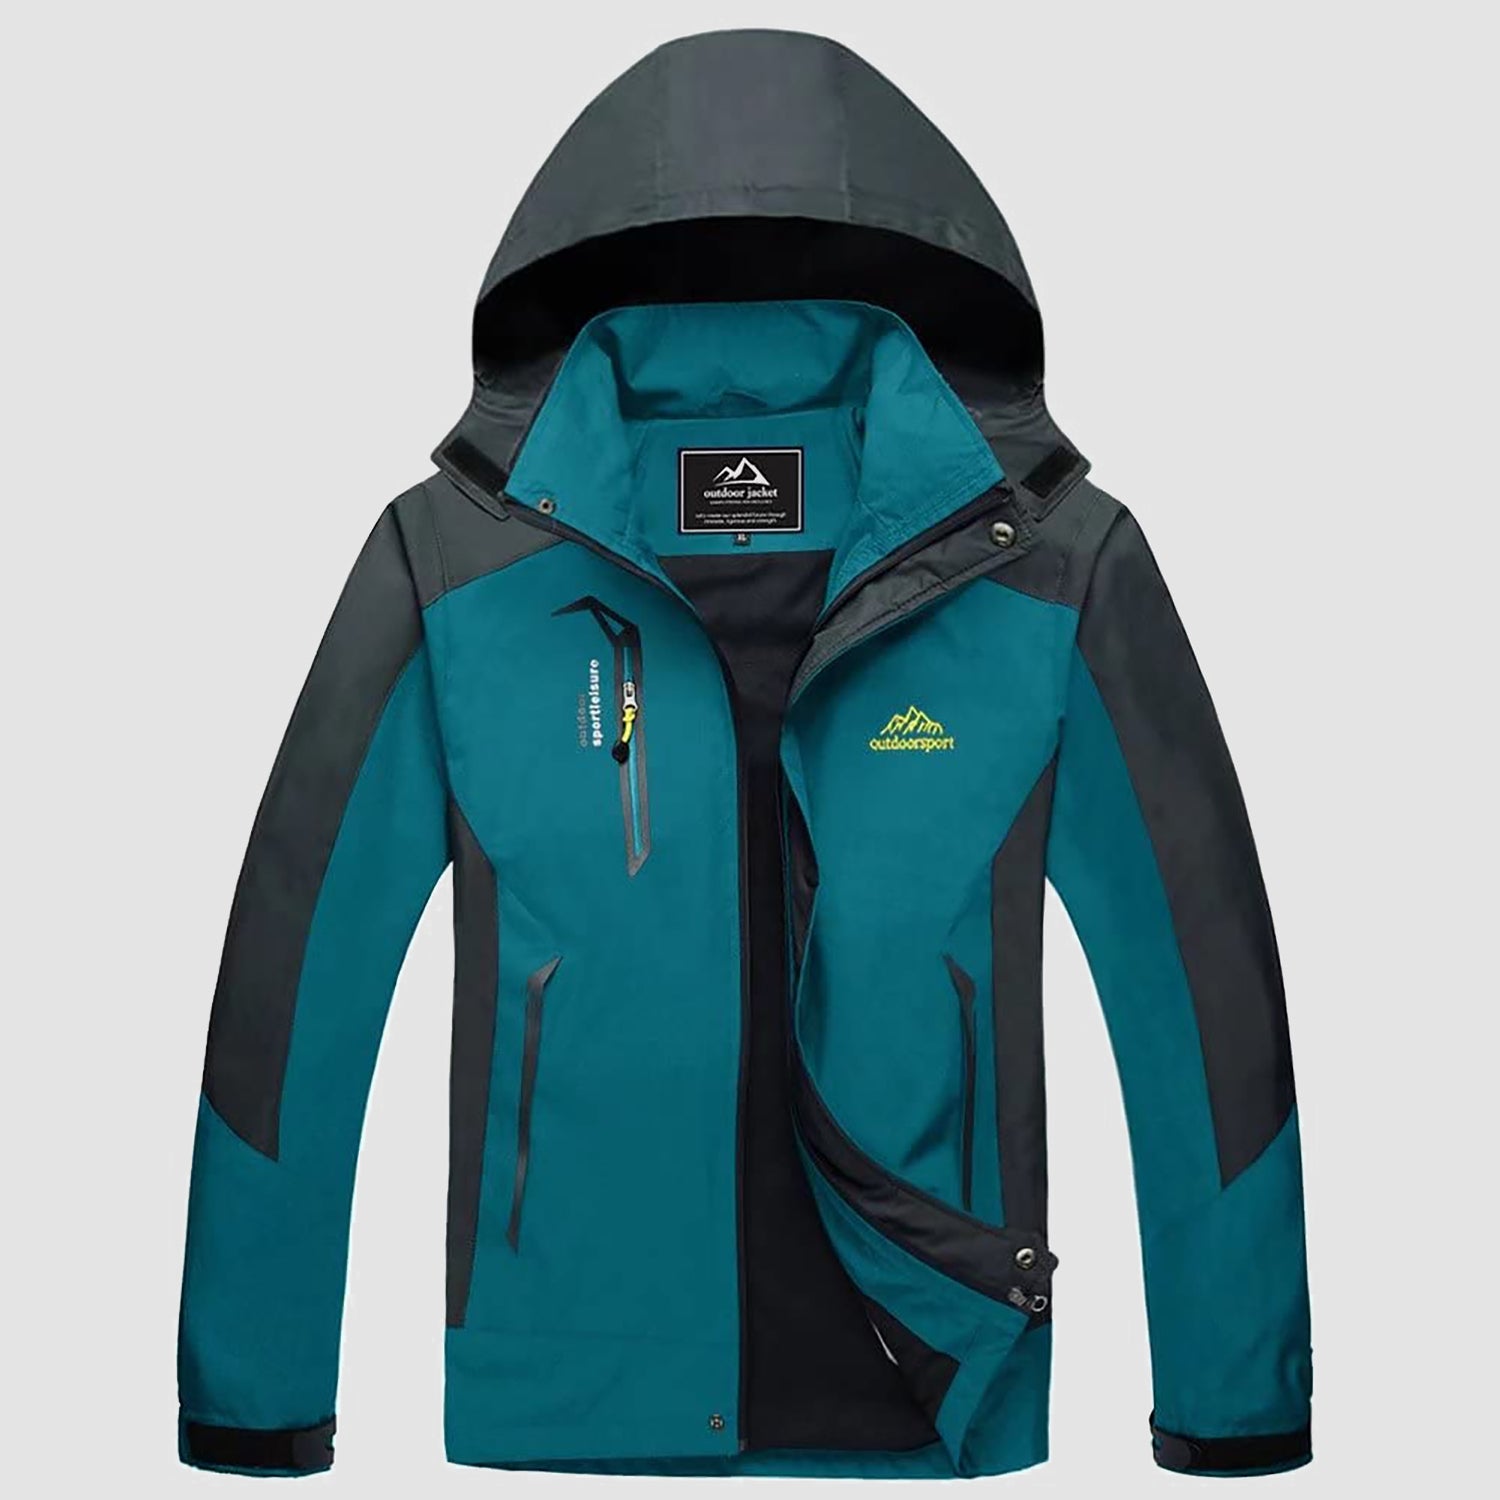 Men's Hooded Jacket Waterproof Jacket for Outdoor – MAGCOMSEN